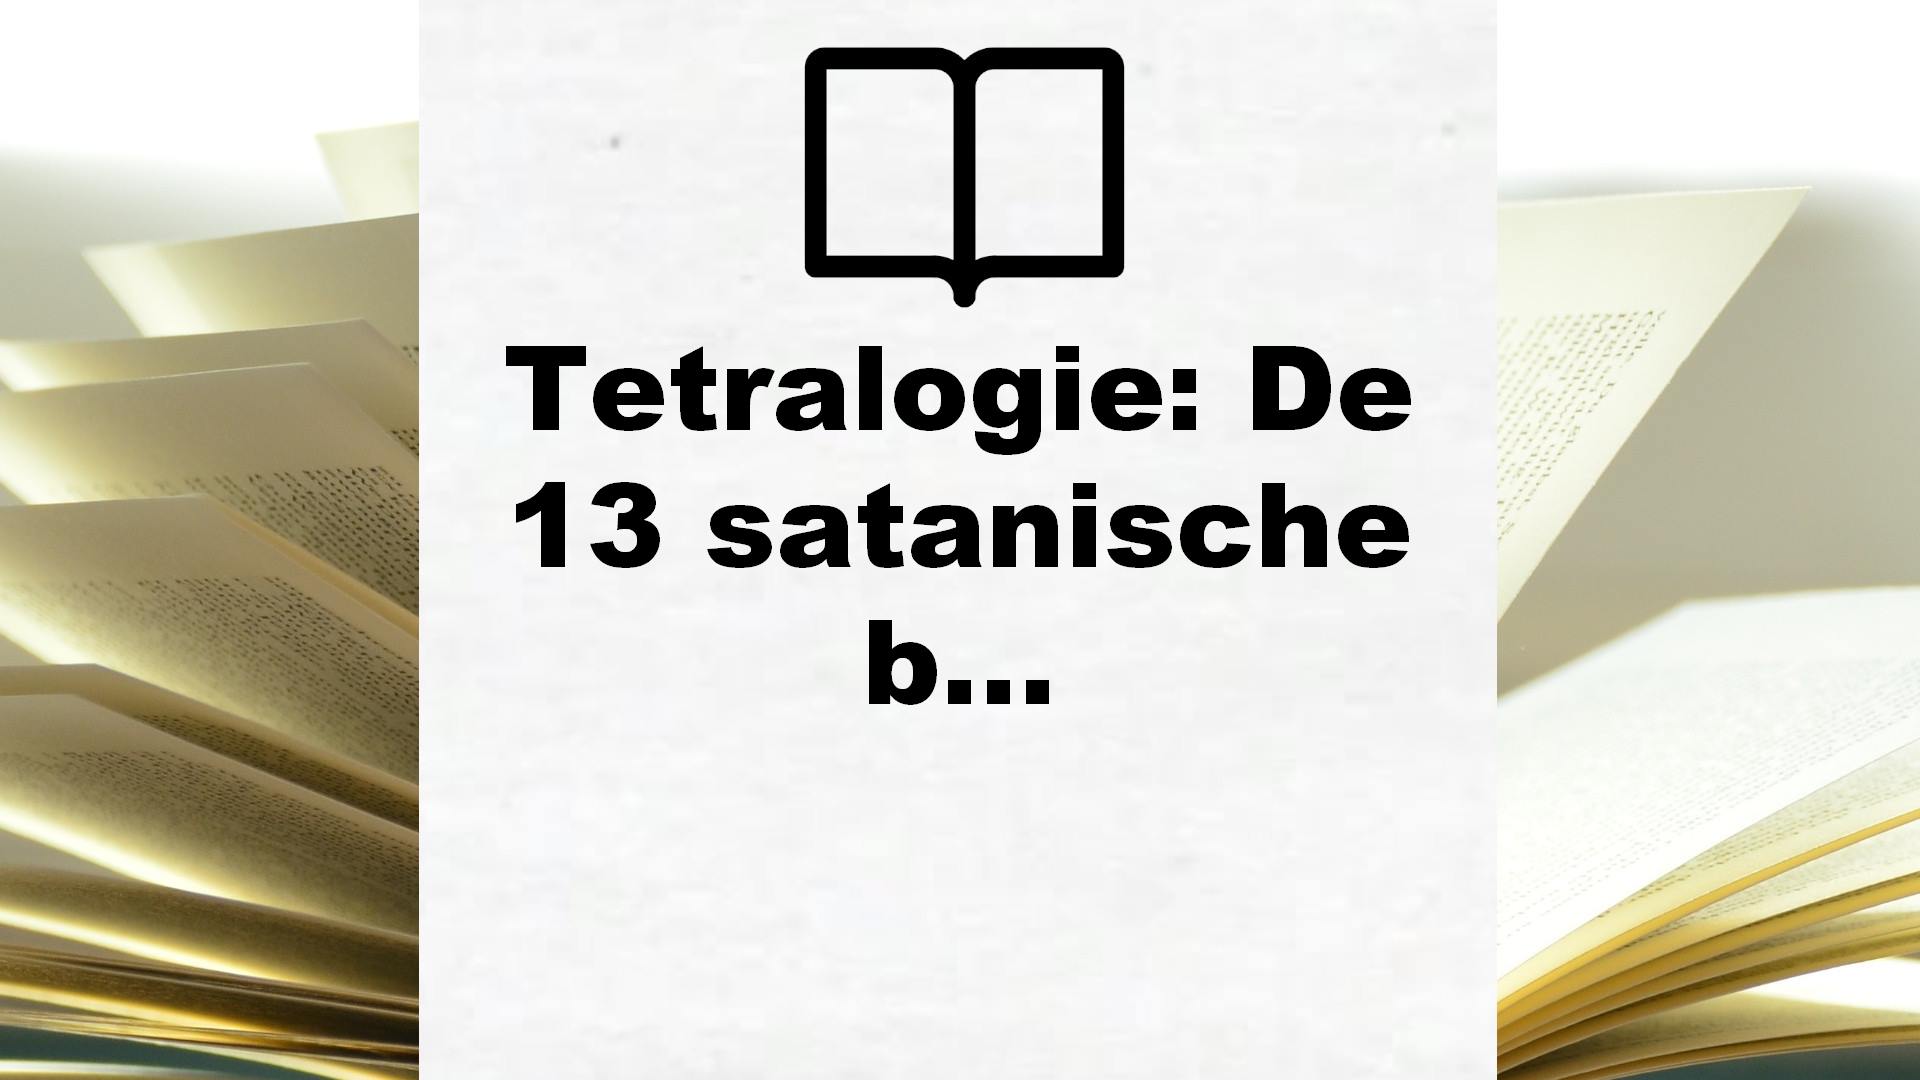 Tetralogie: De 13 satanische bloedlijnen – Boekrecensie